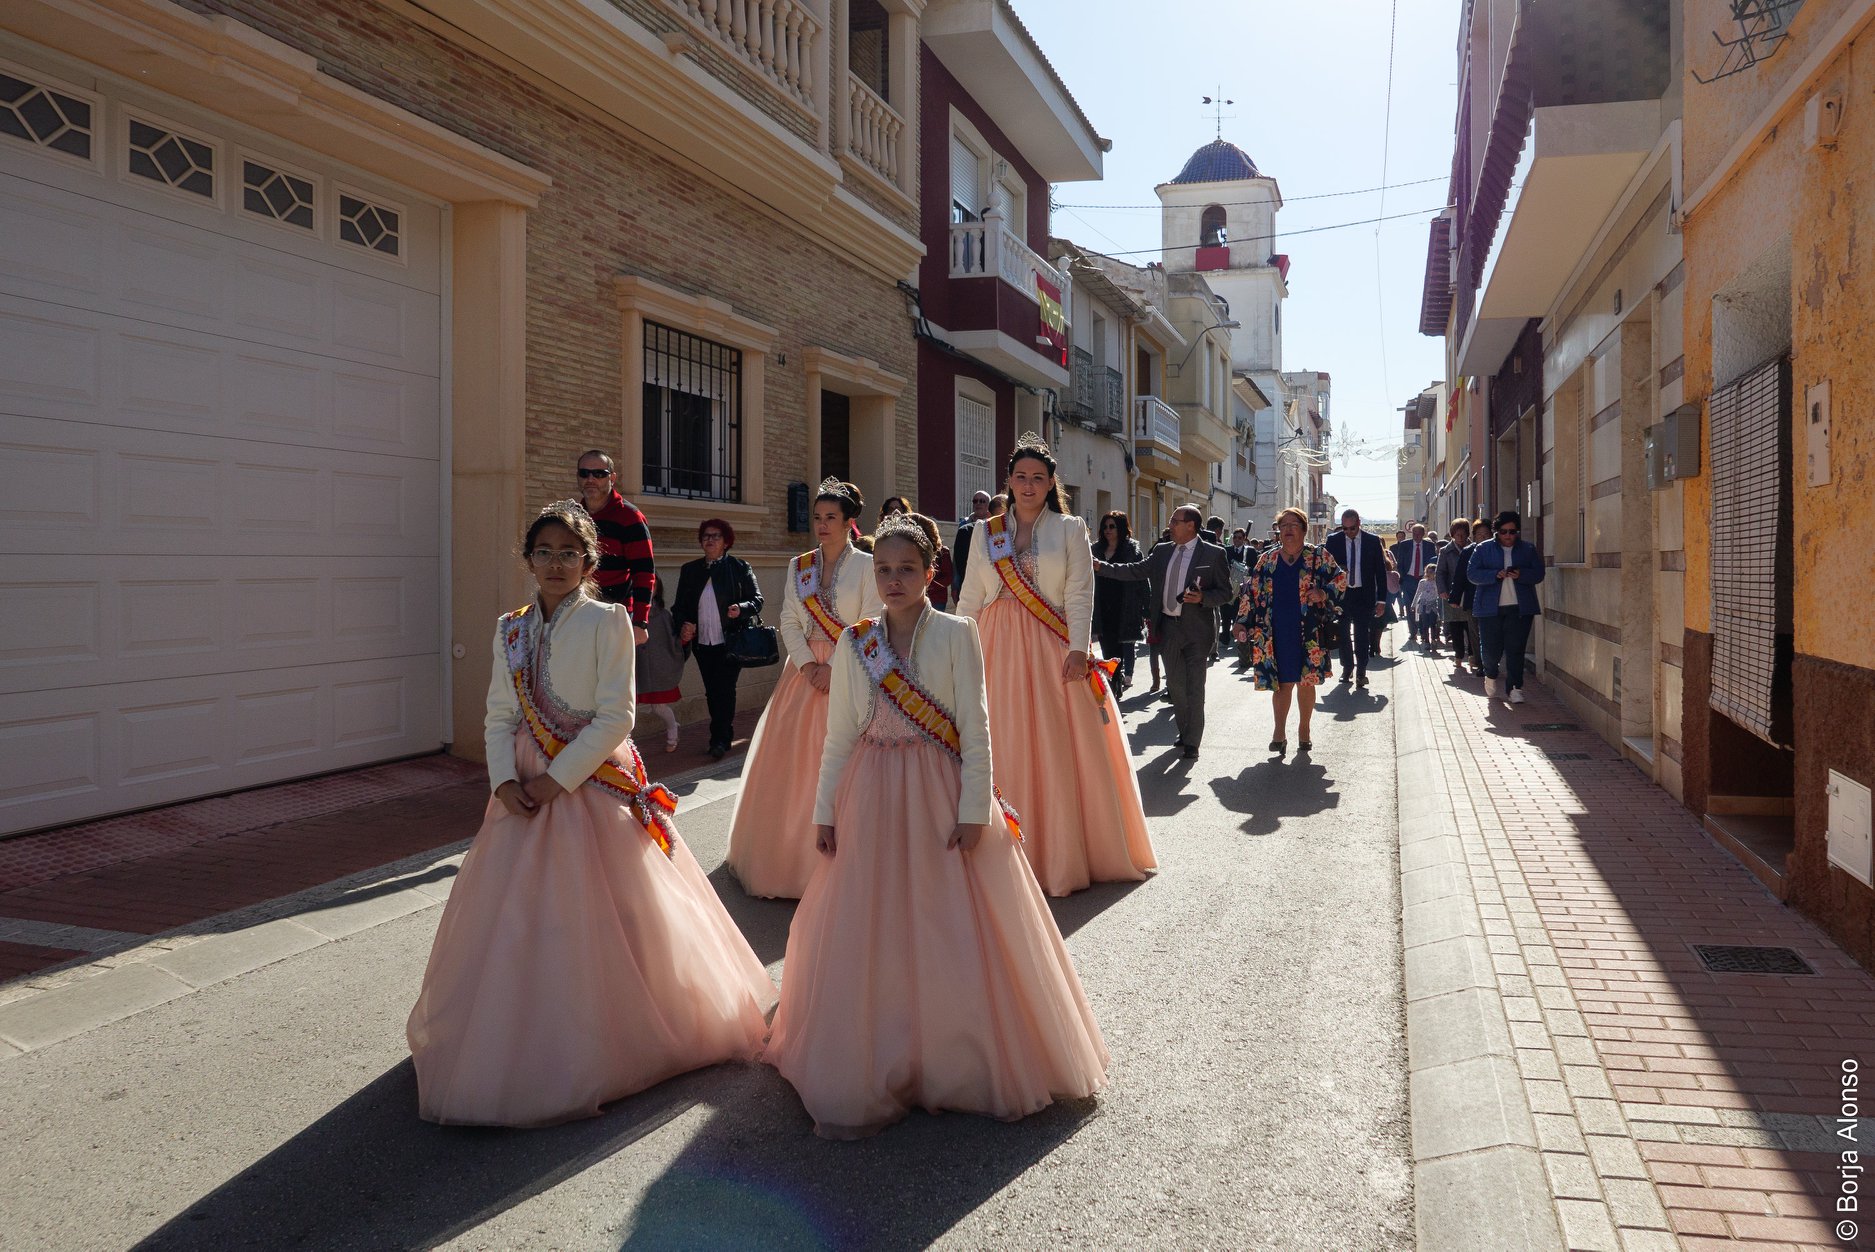 San Fulgencio retoma la elección de las reinas de las fiestas patronales paralizada por el Covid desde 2019.